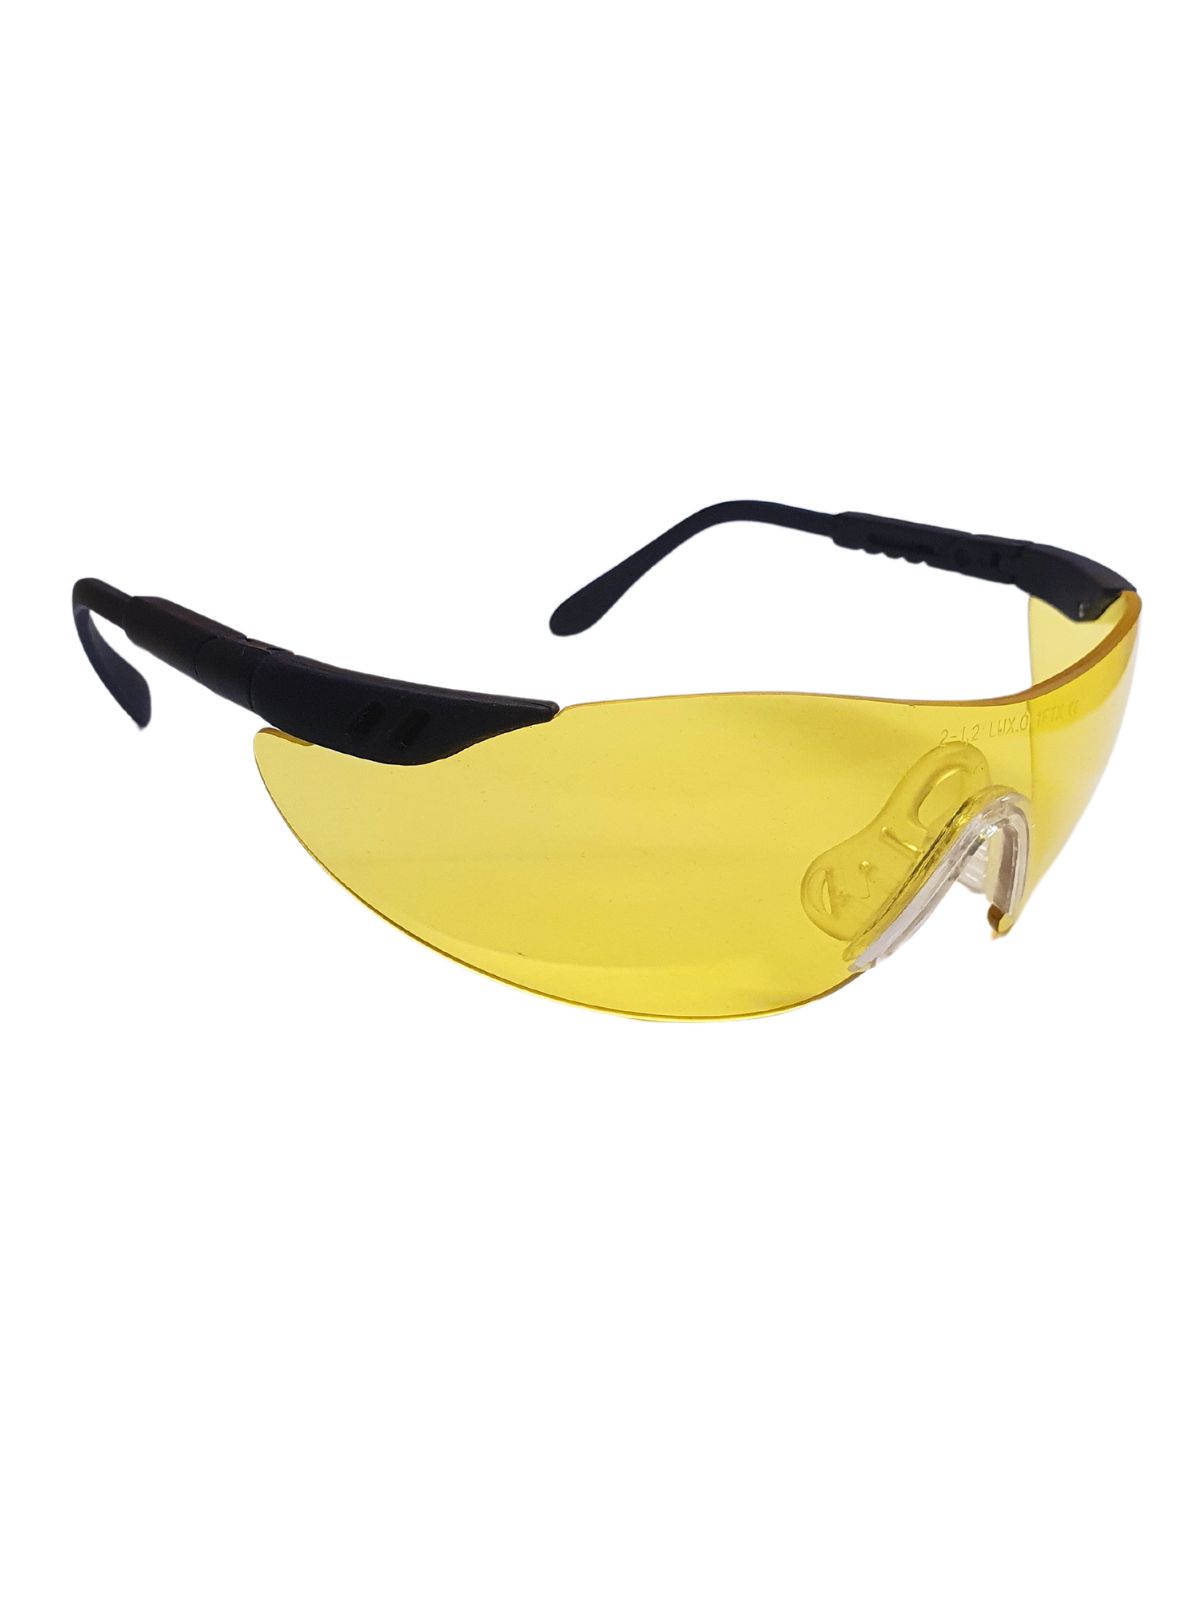 Schutzbrille STYLUX gelb